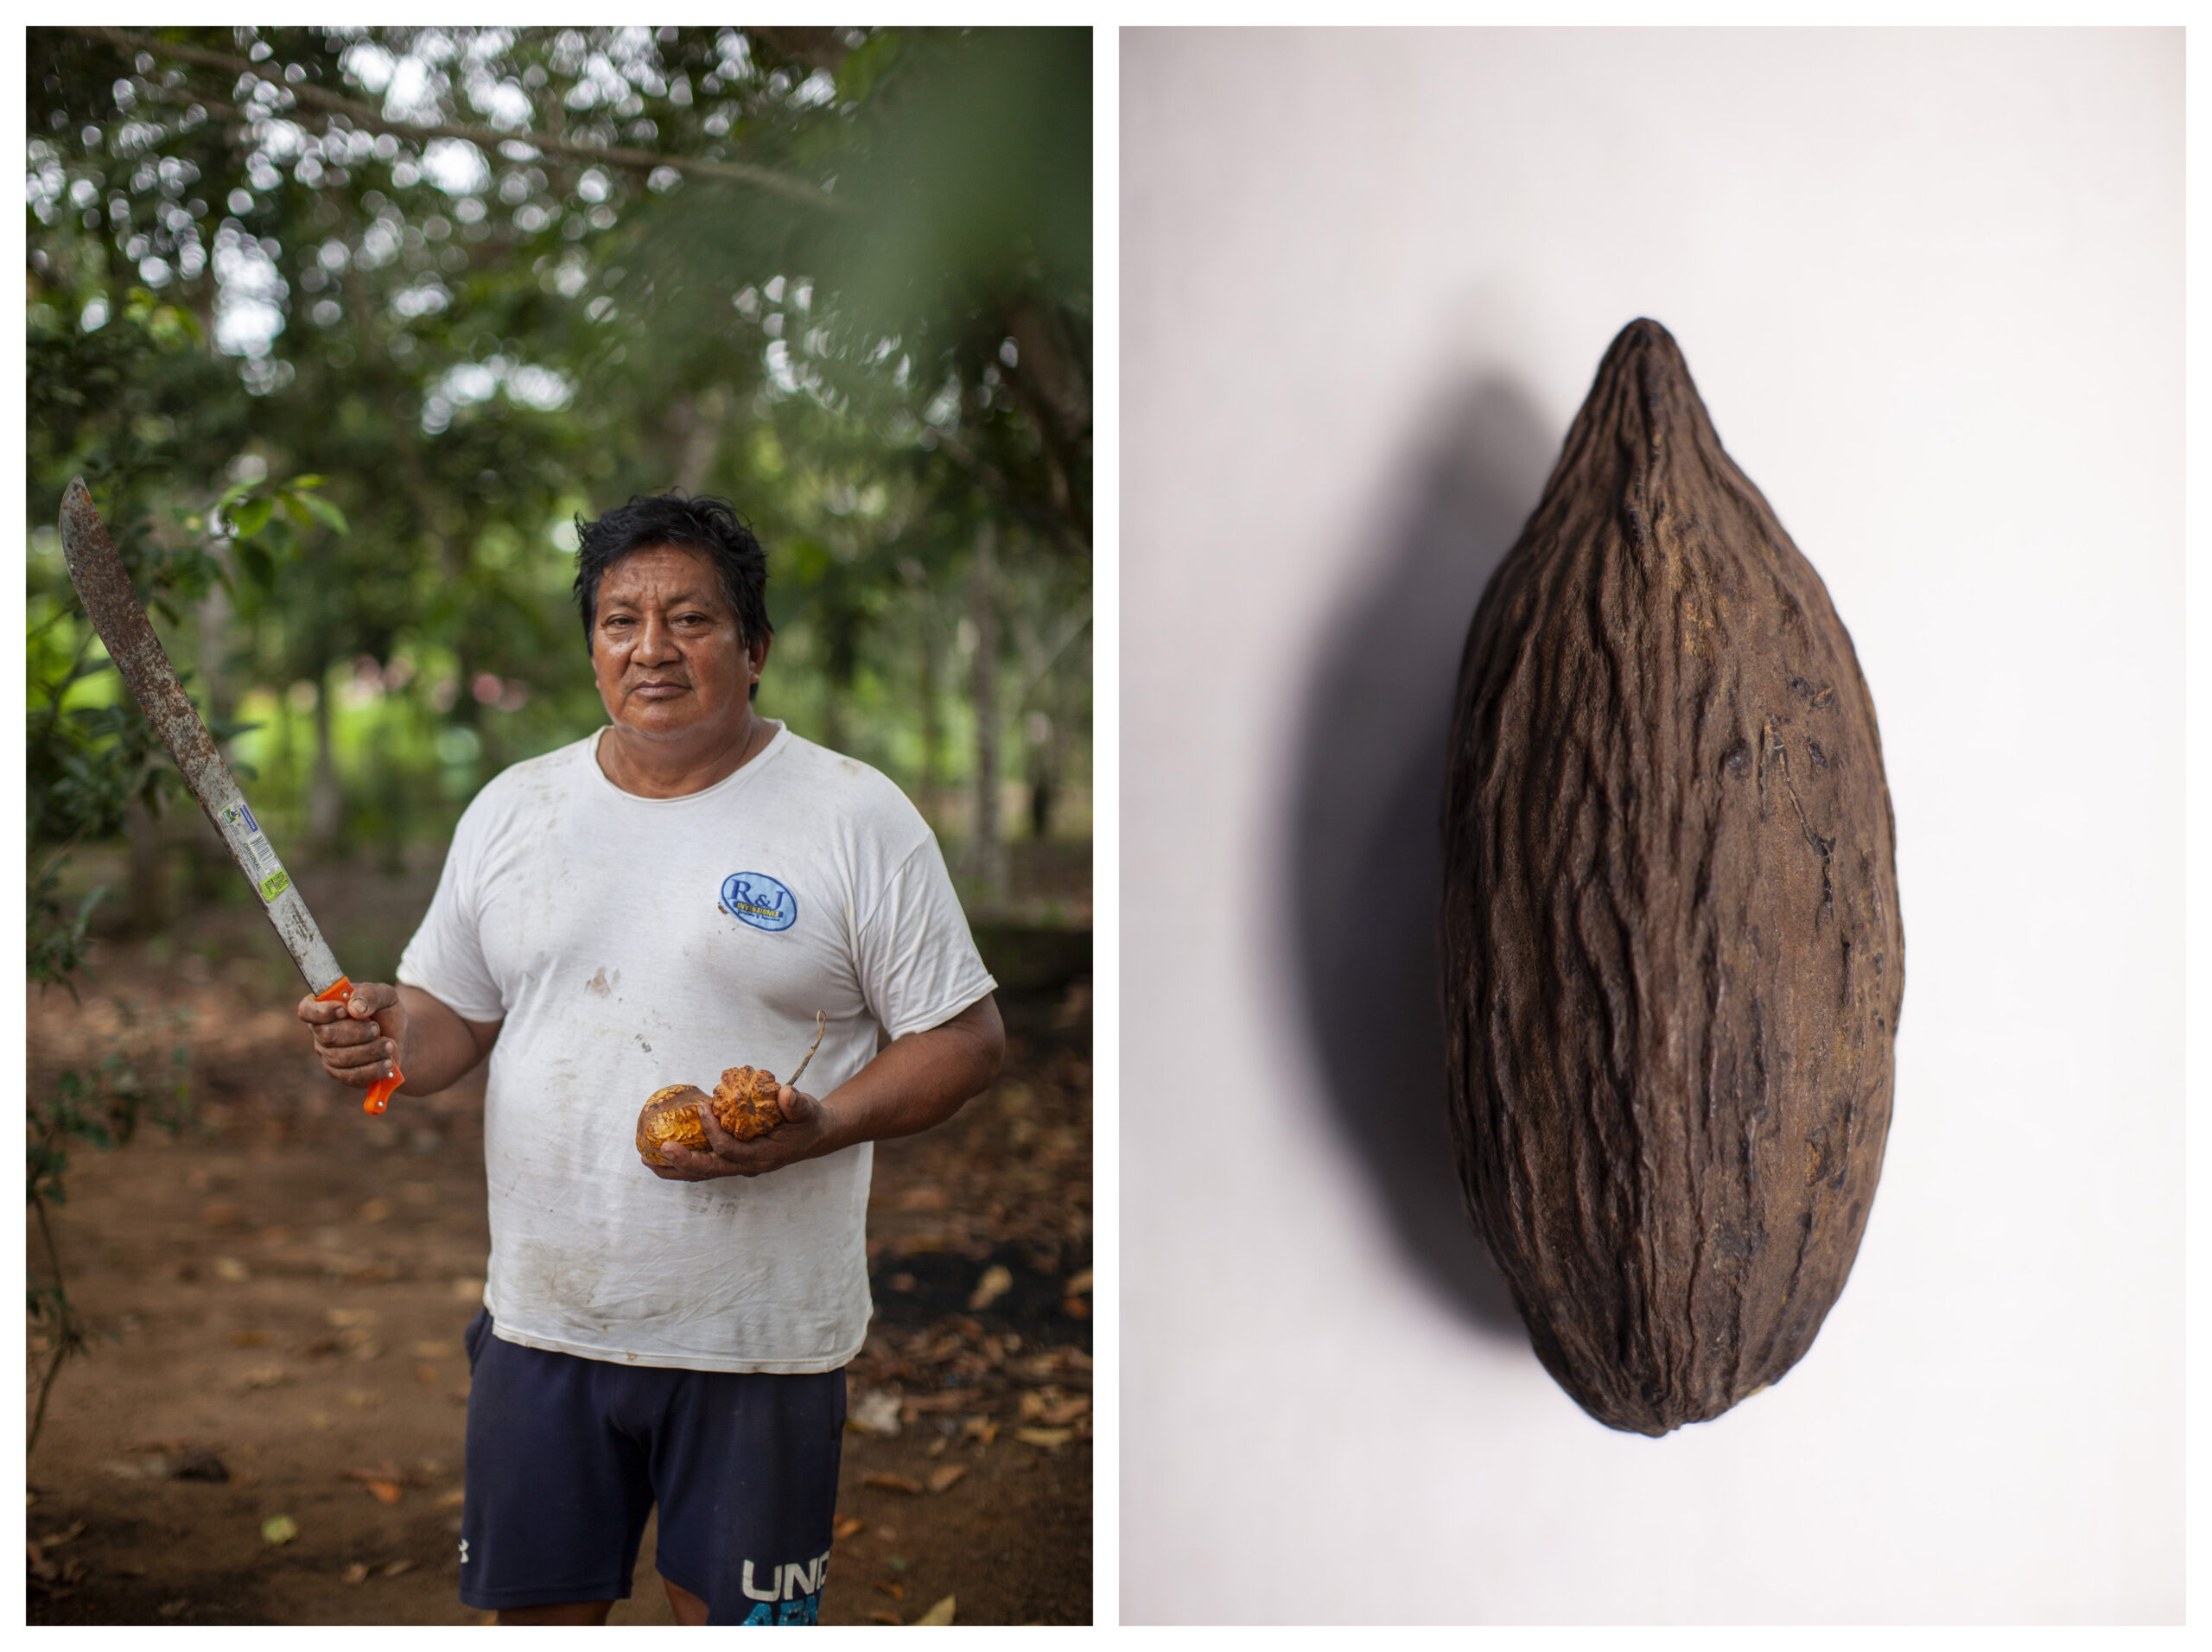 Jorge Tayón Keddero, defensor ambiental de la comunidad Harakmbut. Cacao contra el oro. Fotos: Alejandro Saldívar